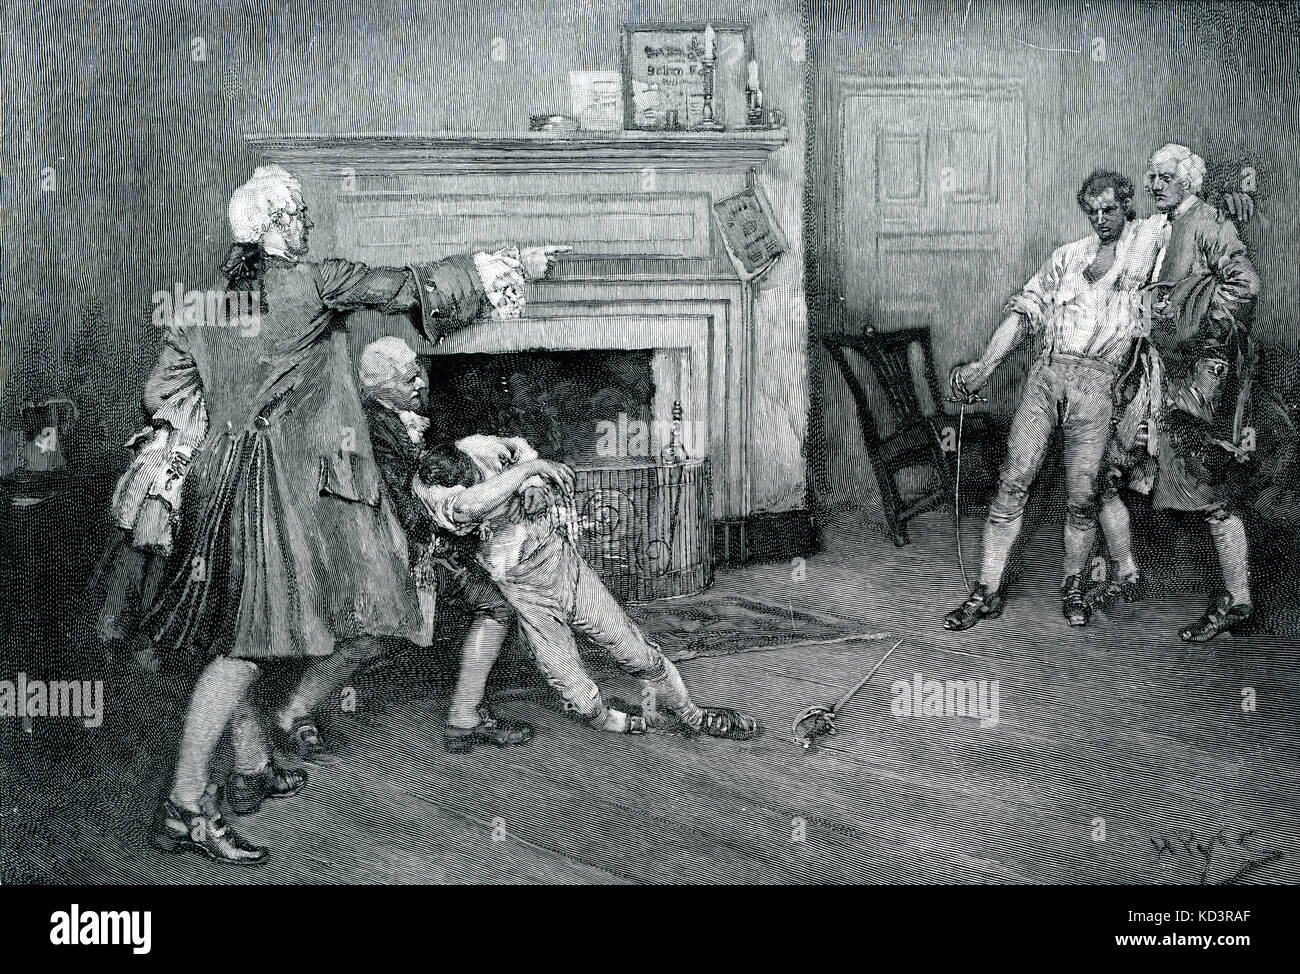 El capitán Tollemache, comandante británico, es ejecutado y asesinado en un duelo con el capitán Pennington en la tara de City Arms, colonial en Nueva York, siglo XVIII. Ilustración de Howard Pyle, 1896 Foto de stock